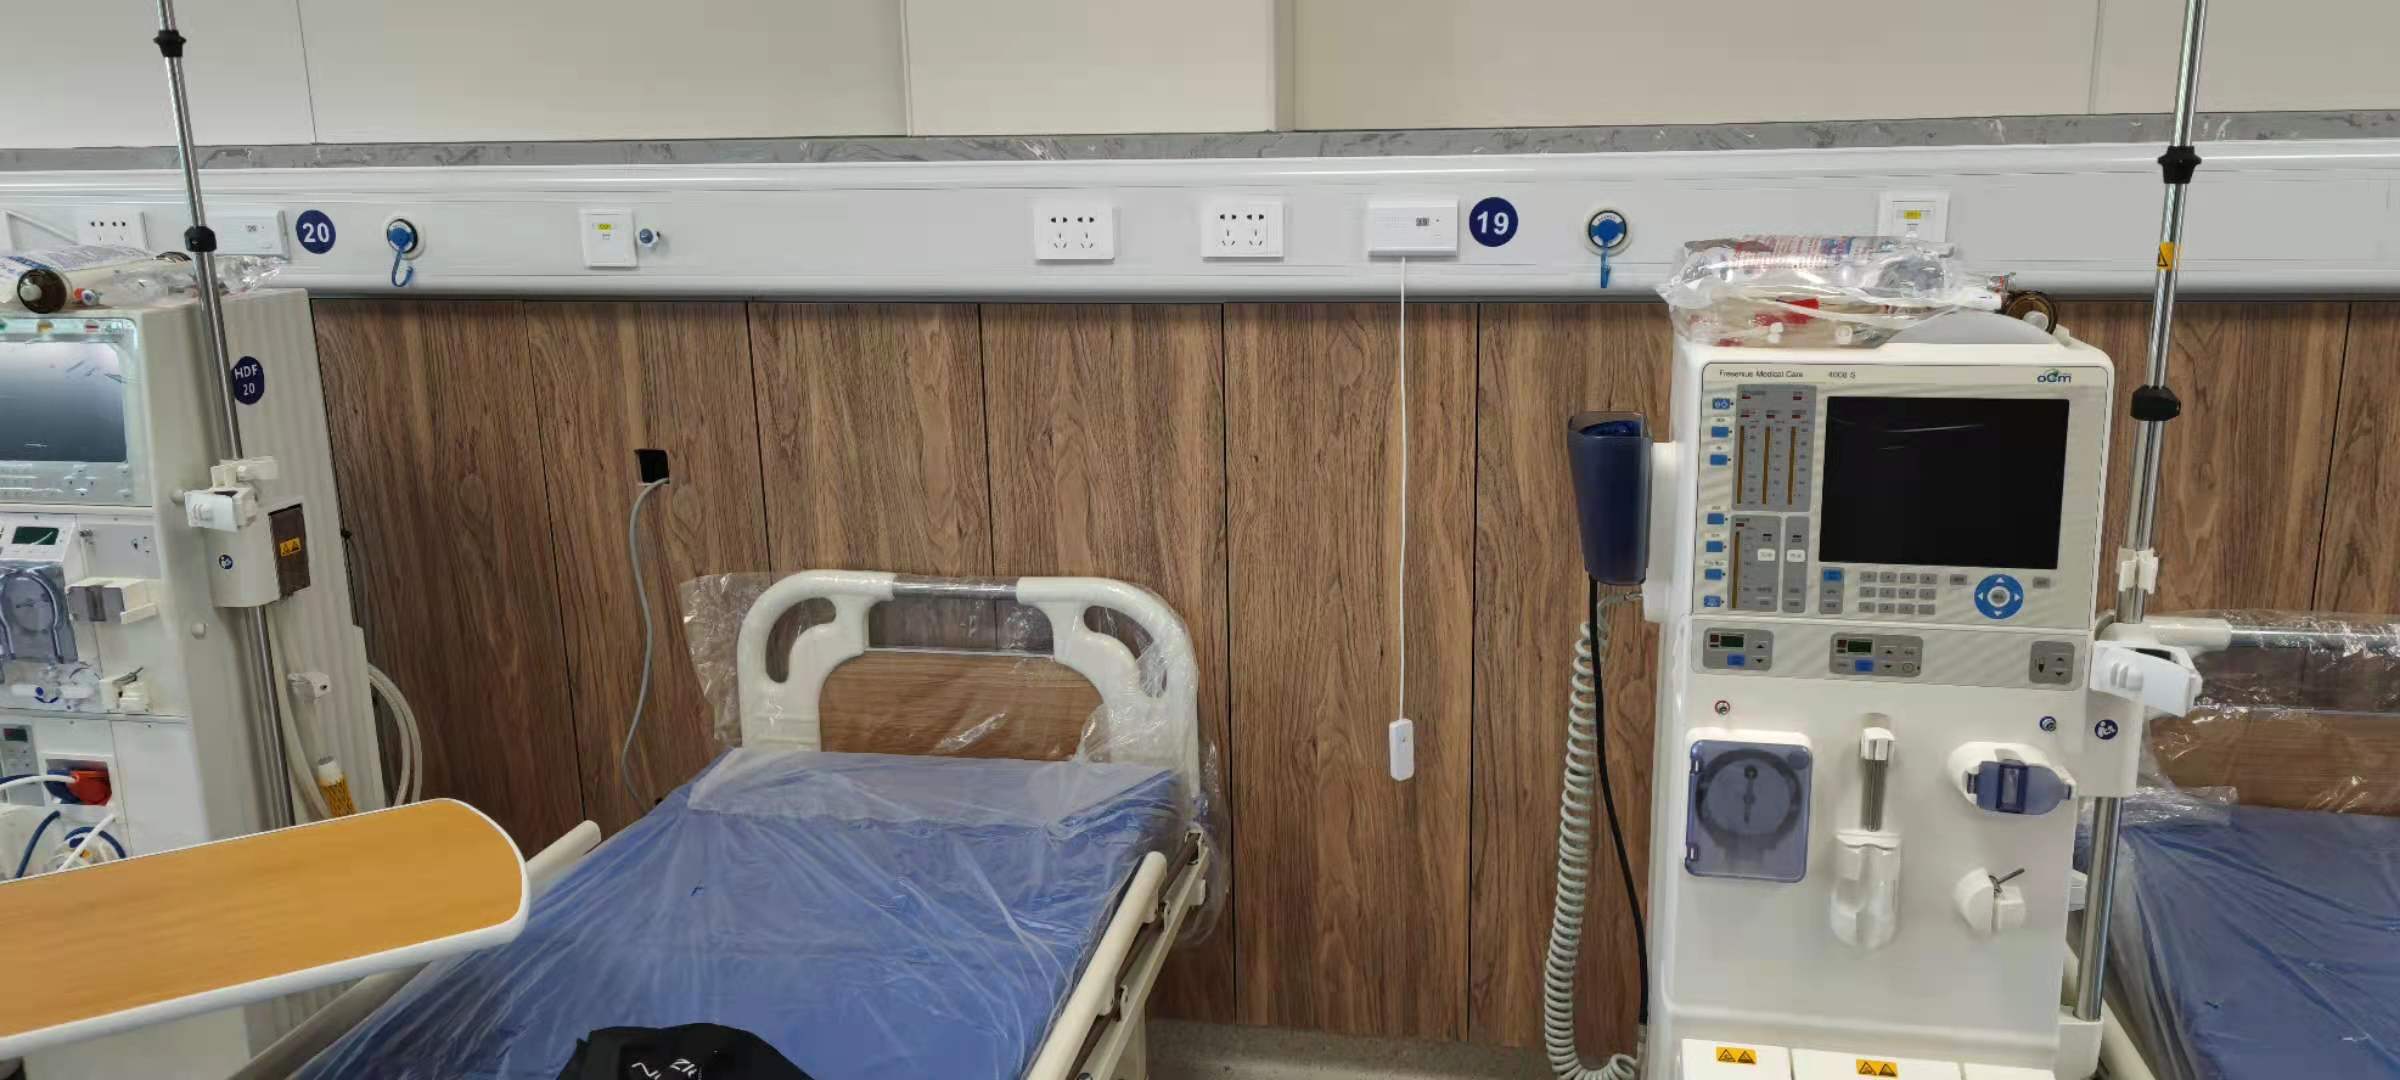 安徽医院中心供氧装置